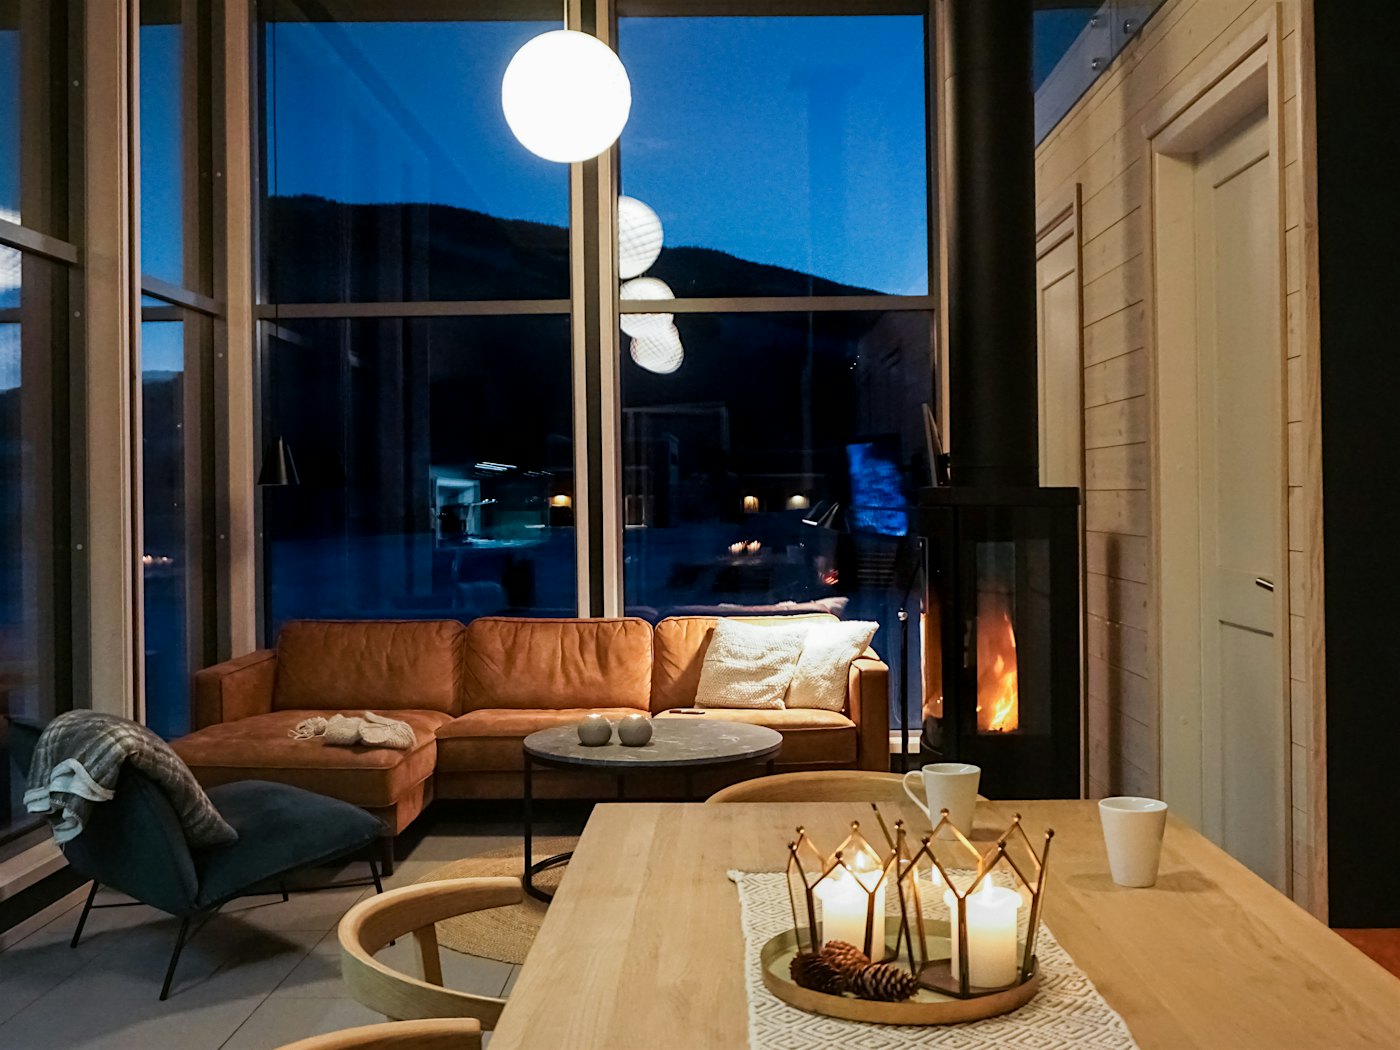 Moderne stue med sofa, sofabord, stuebord og peis. Store vinduer fra gulv til tak.